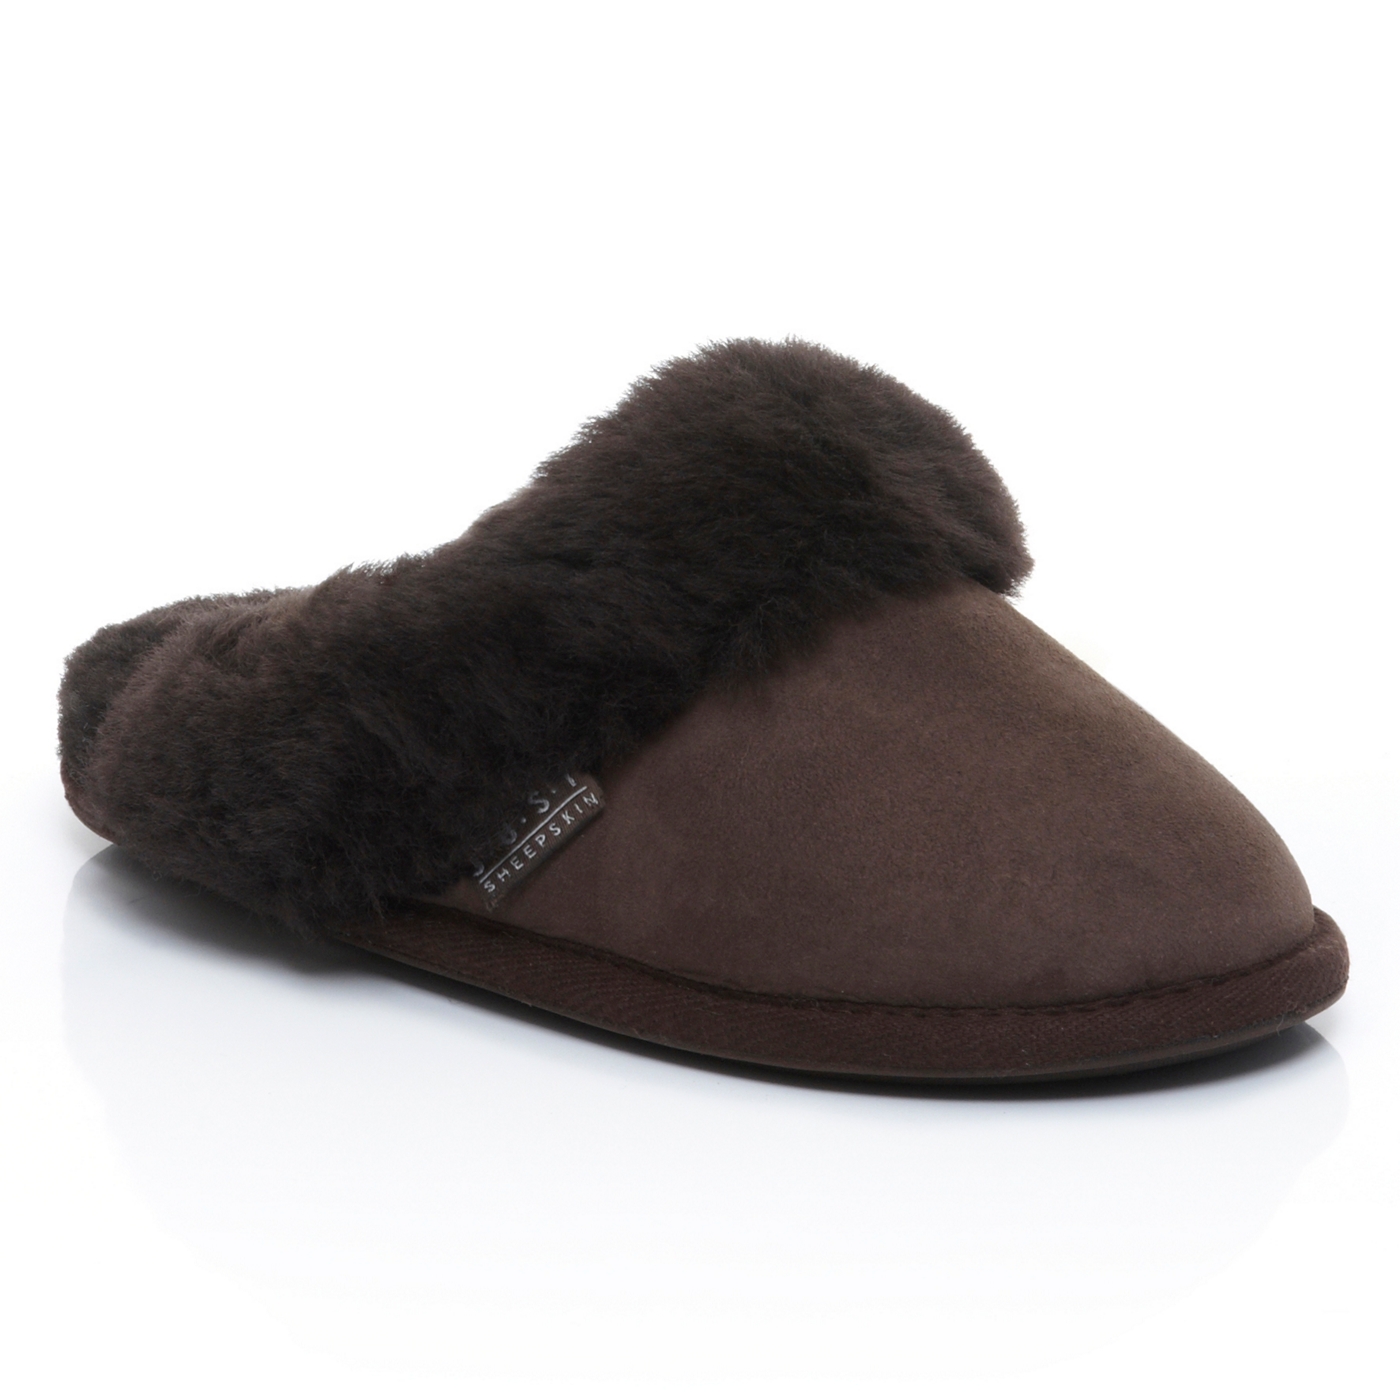 Just Sheepskin Dark brown Duchess sheepskin slippers